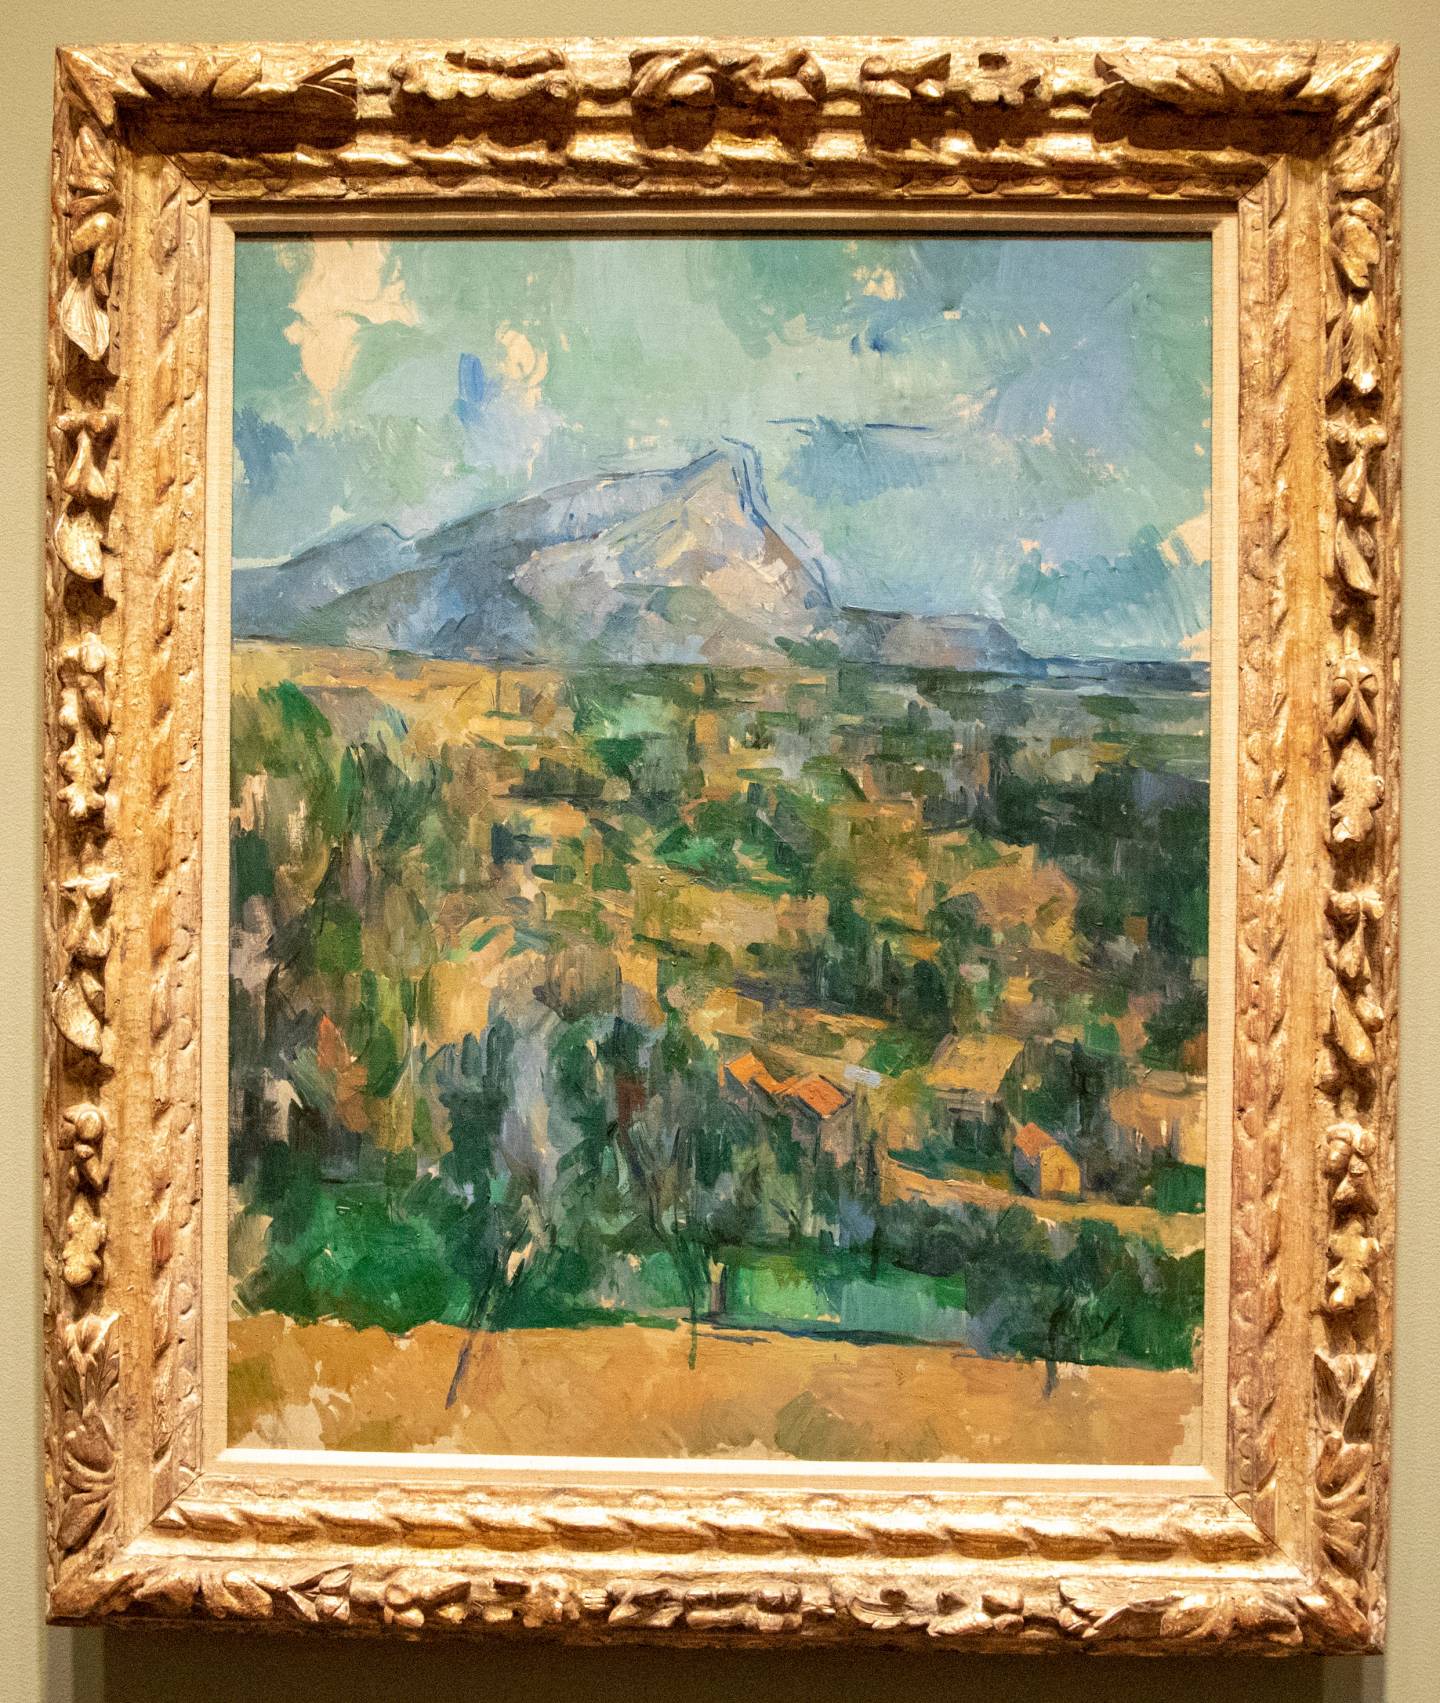 Cézanne’s oil on canvas, “Mount Saint Victoire”